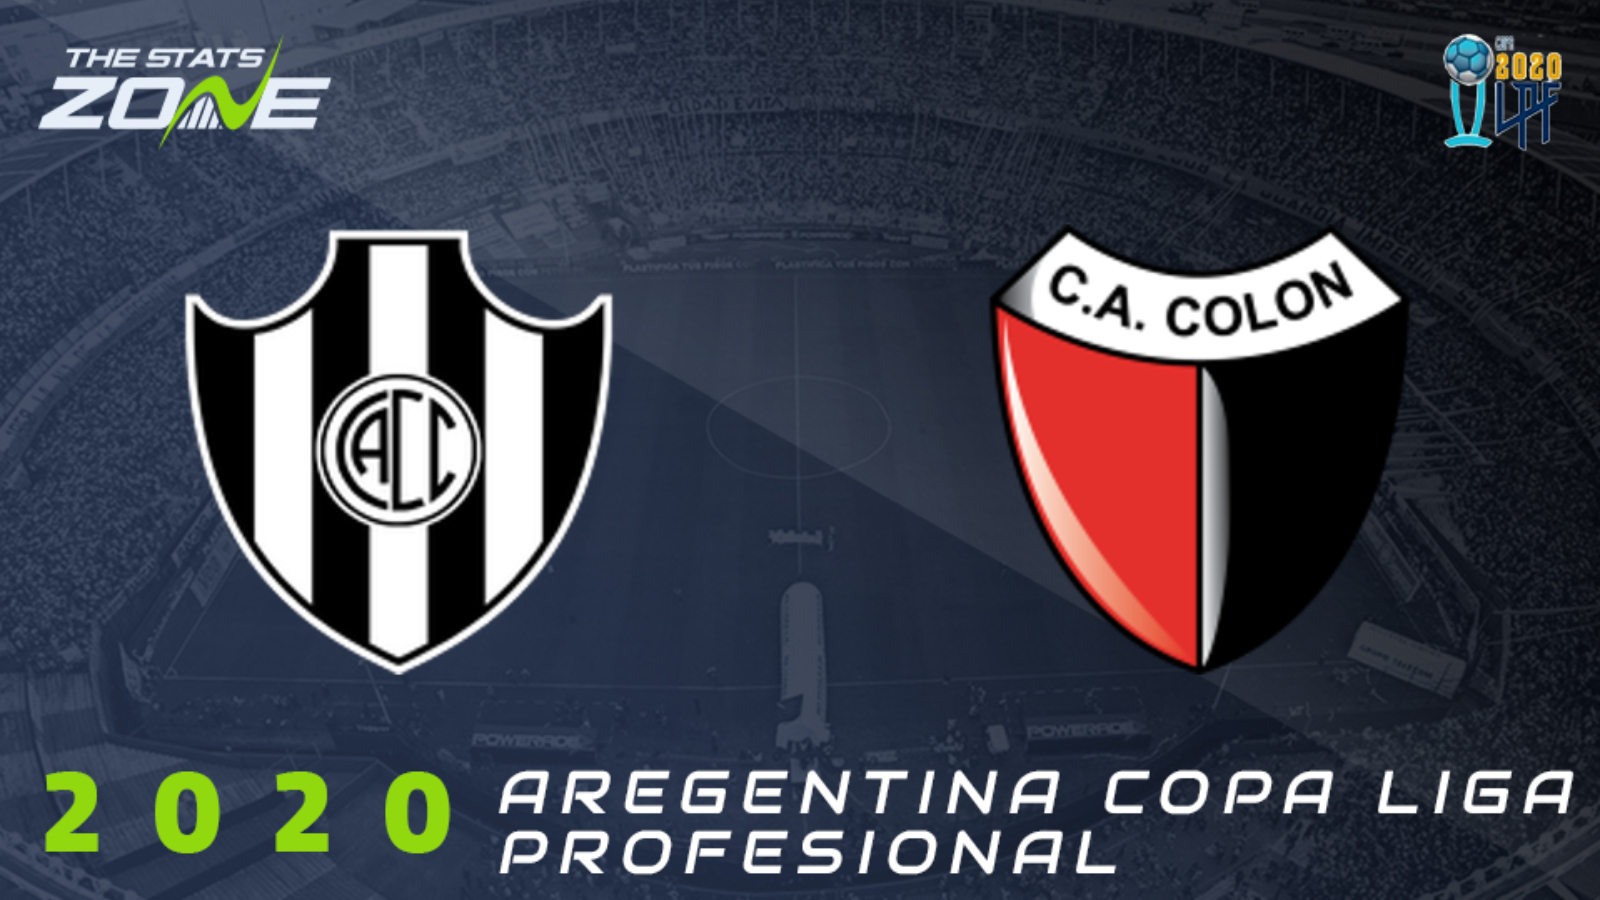 2020 Argentine Copa Liga Profesional Central Cordoba Sde Vs Colon Preview Prediction The Stats Zone